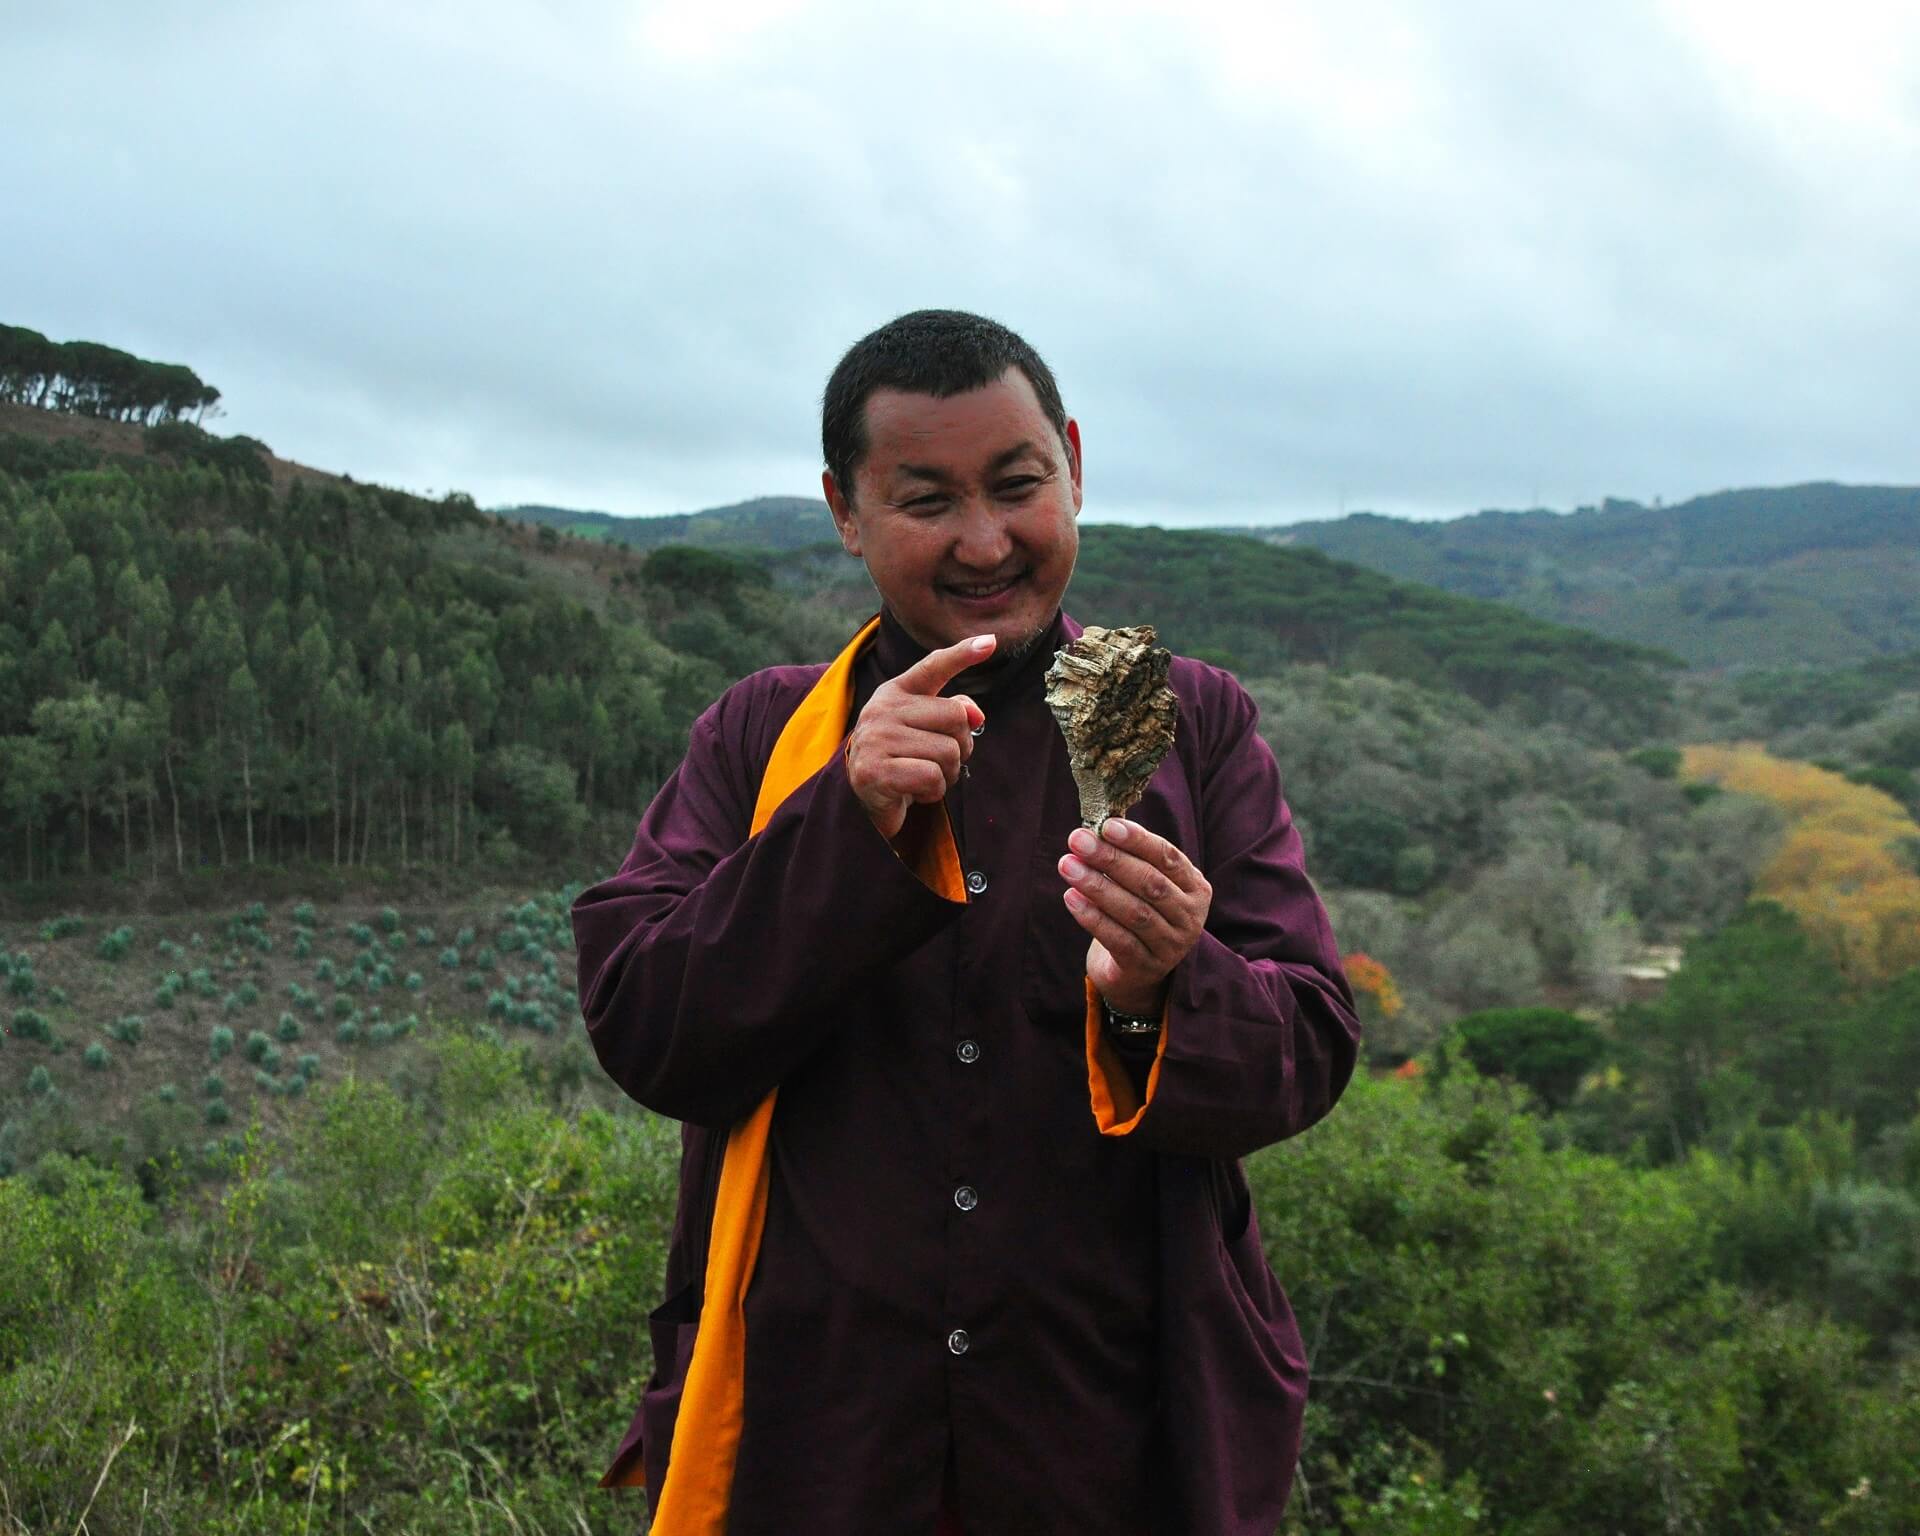 Patrul Rinpoche artist and buddhism teacher